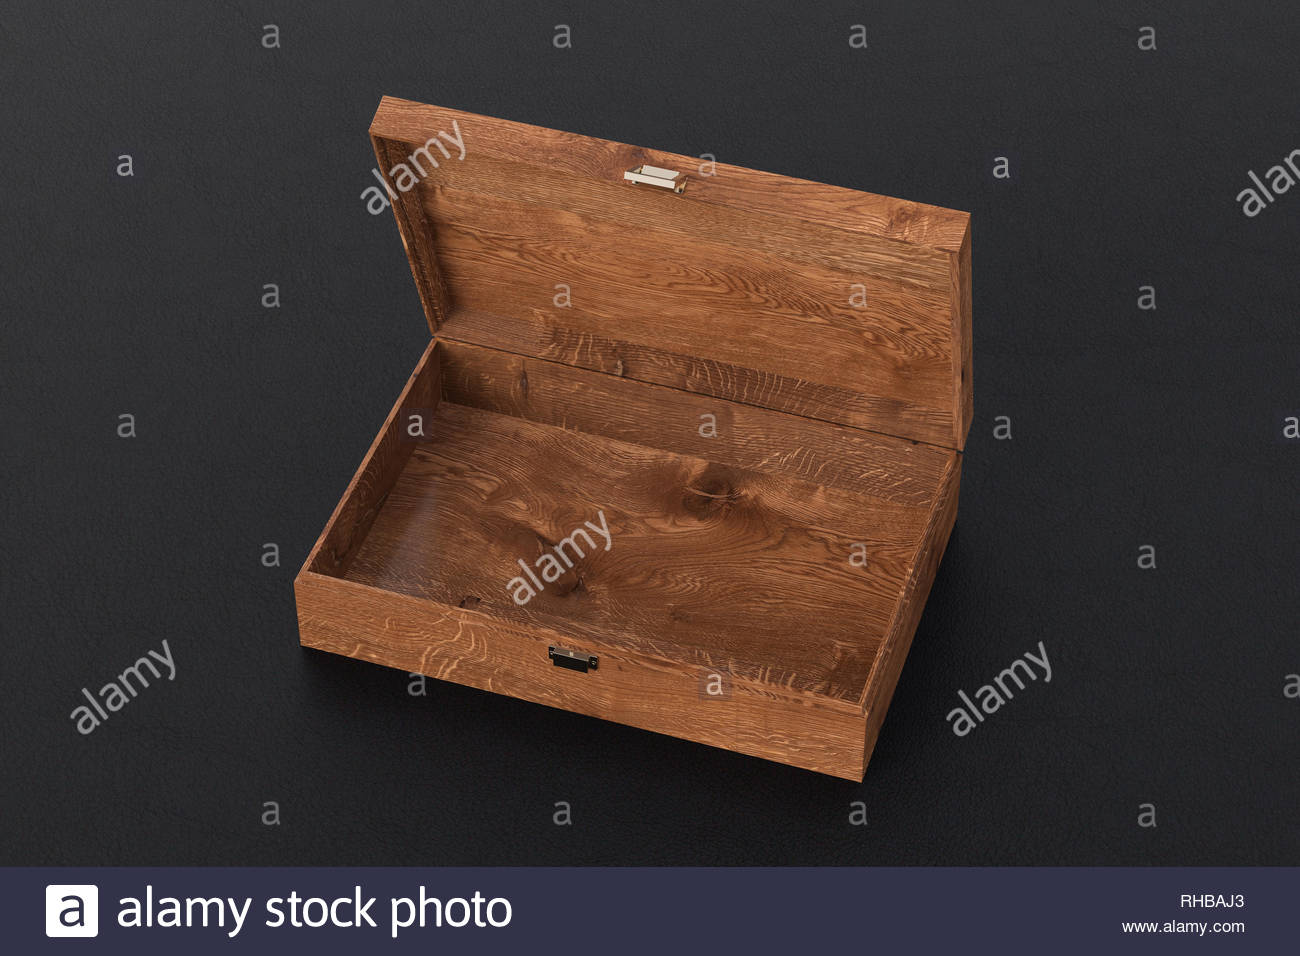 Dark Wooden Empty Open Long Box Or Casket On Black Background 3d